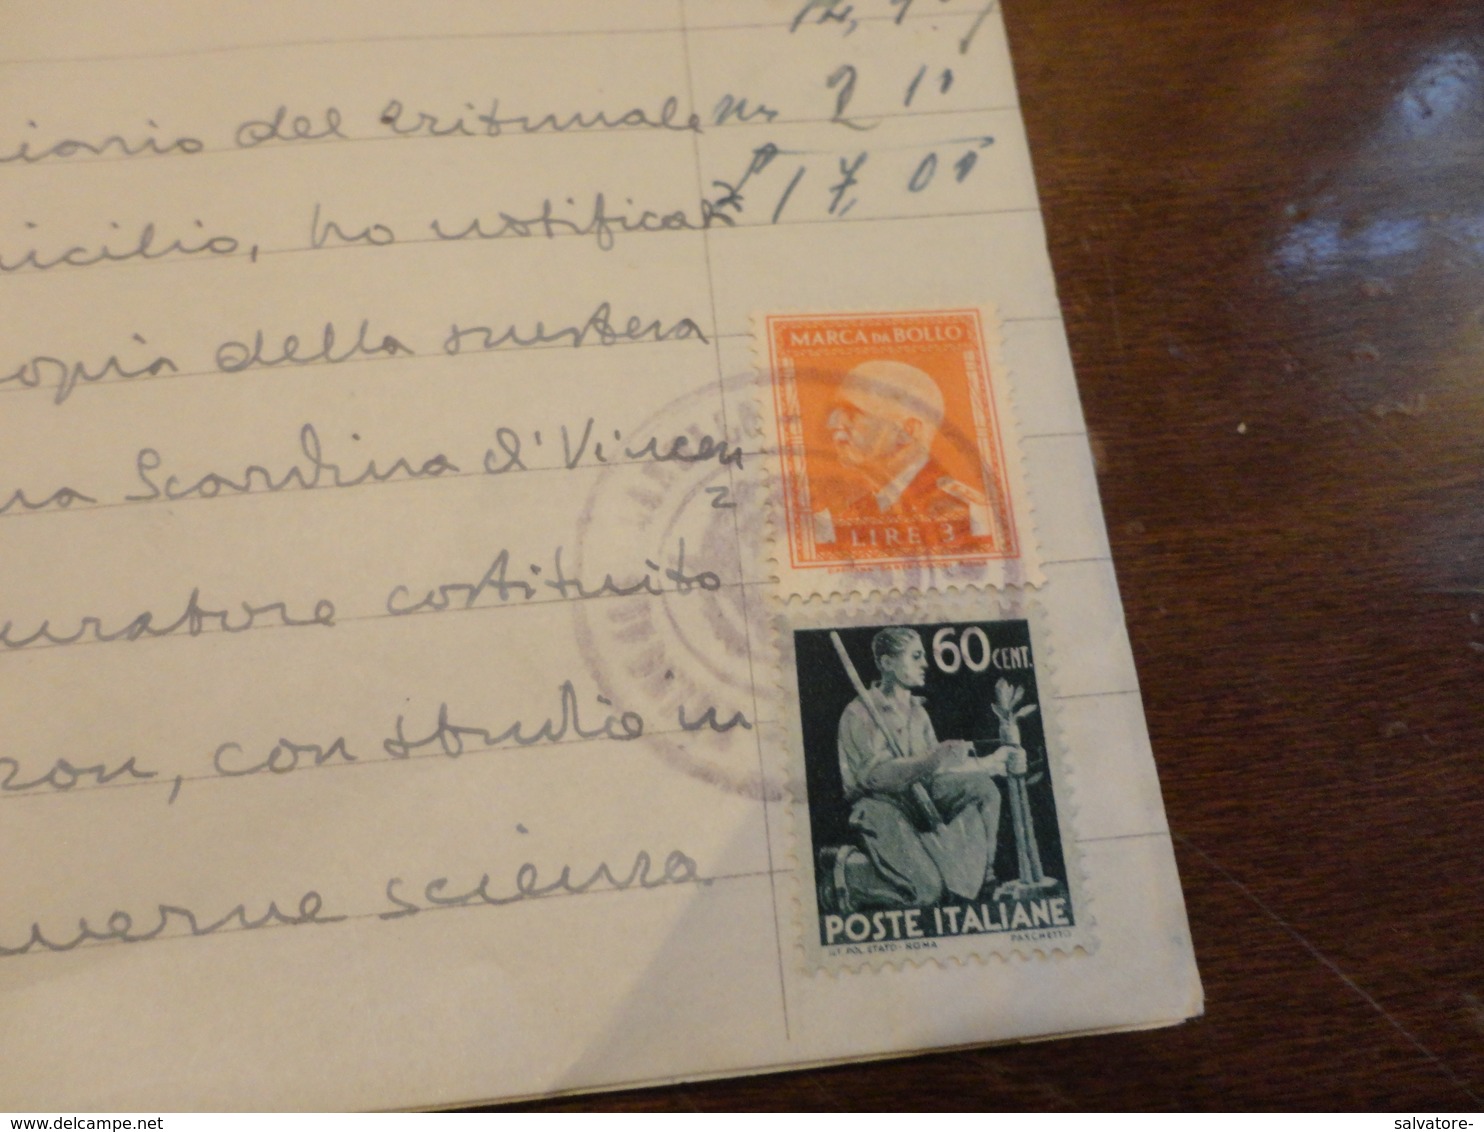 FRANCOBOLLO LUOGOTENENZA CENTESIMI 60 USATO COME FISCALE + MARCA DA BOLLO LIRE 8-DICEMBRE 1945 - Fiscaux